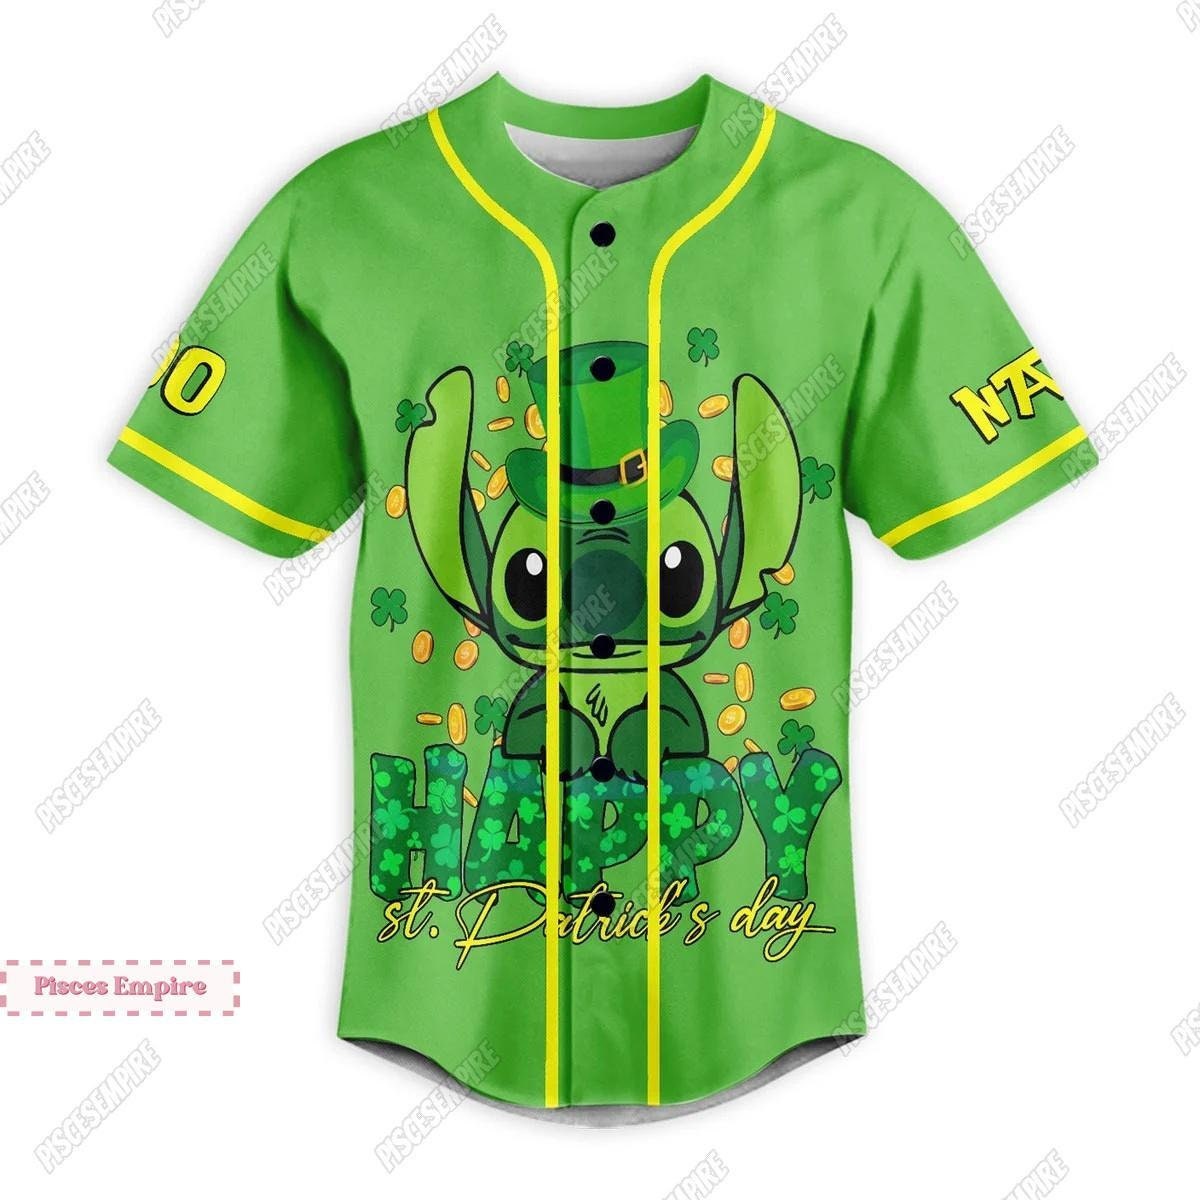 Cute Stitch Jersey Shirt, Custom Stitch Jersey, Disney Stitch Baseball Jersey, Funny Stitch Shirt